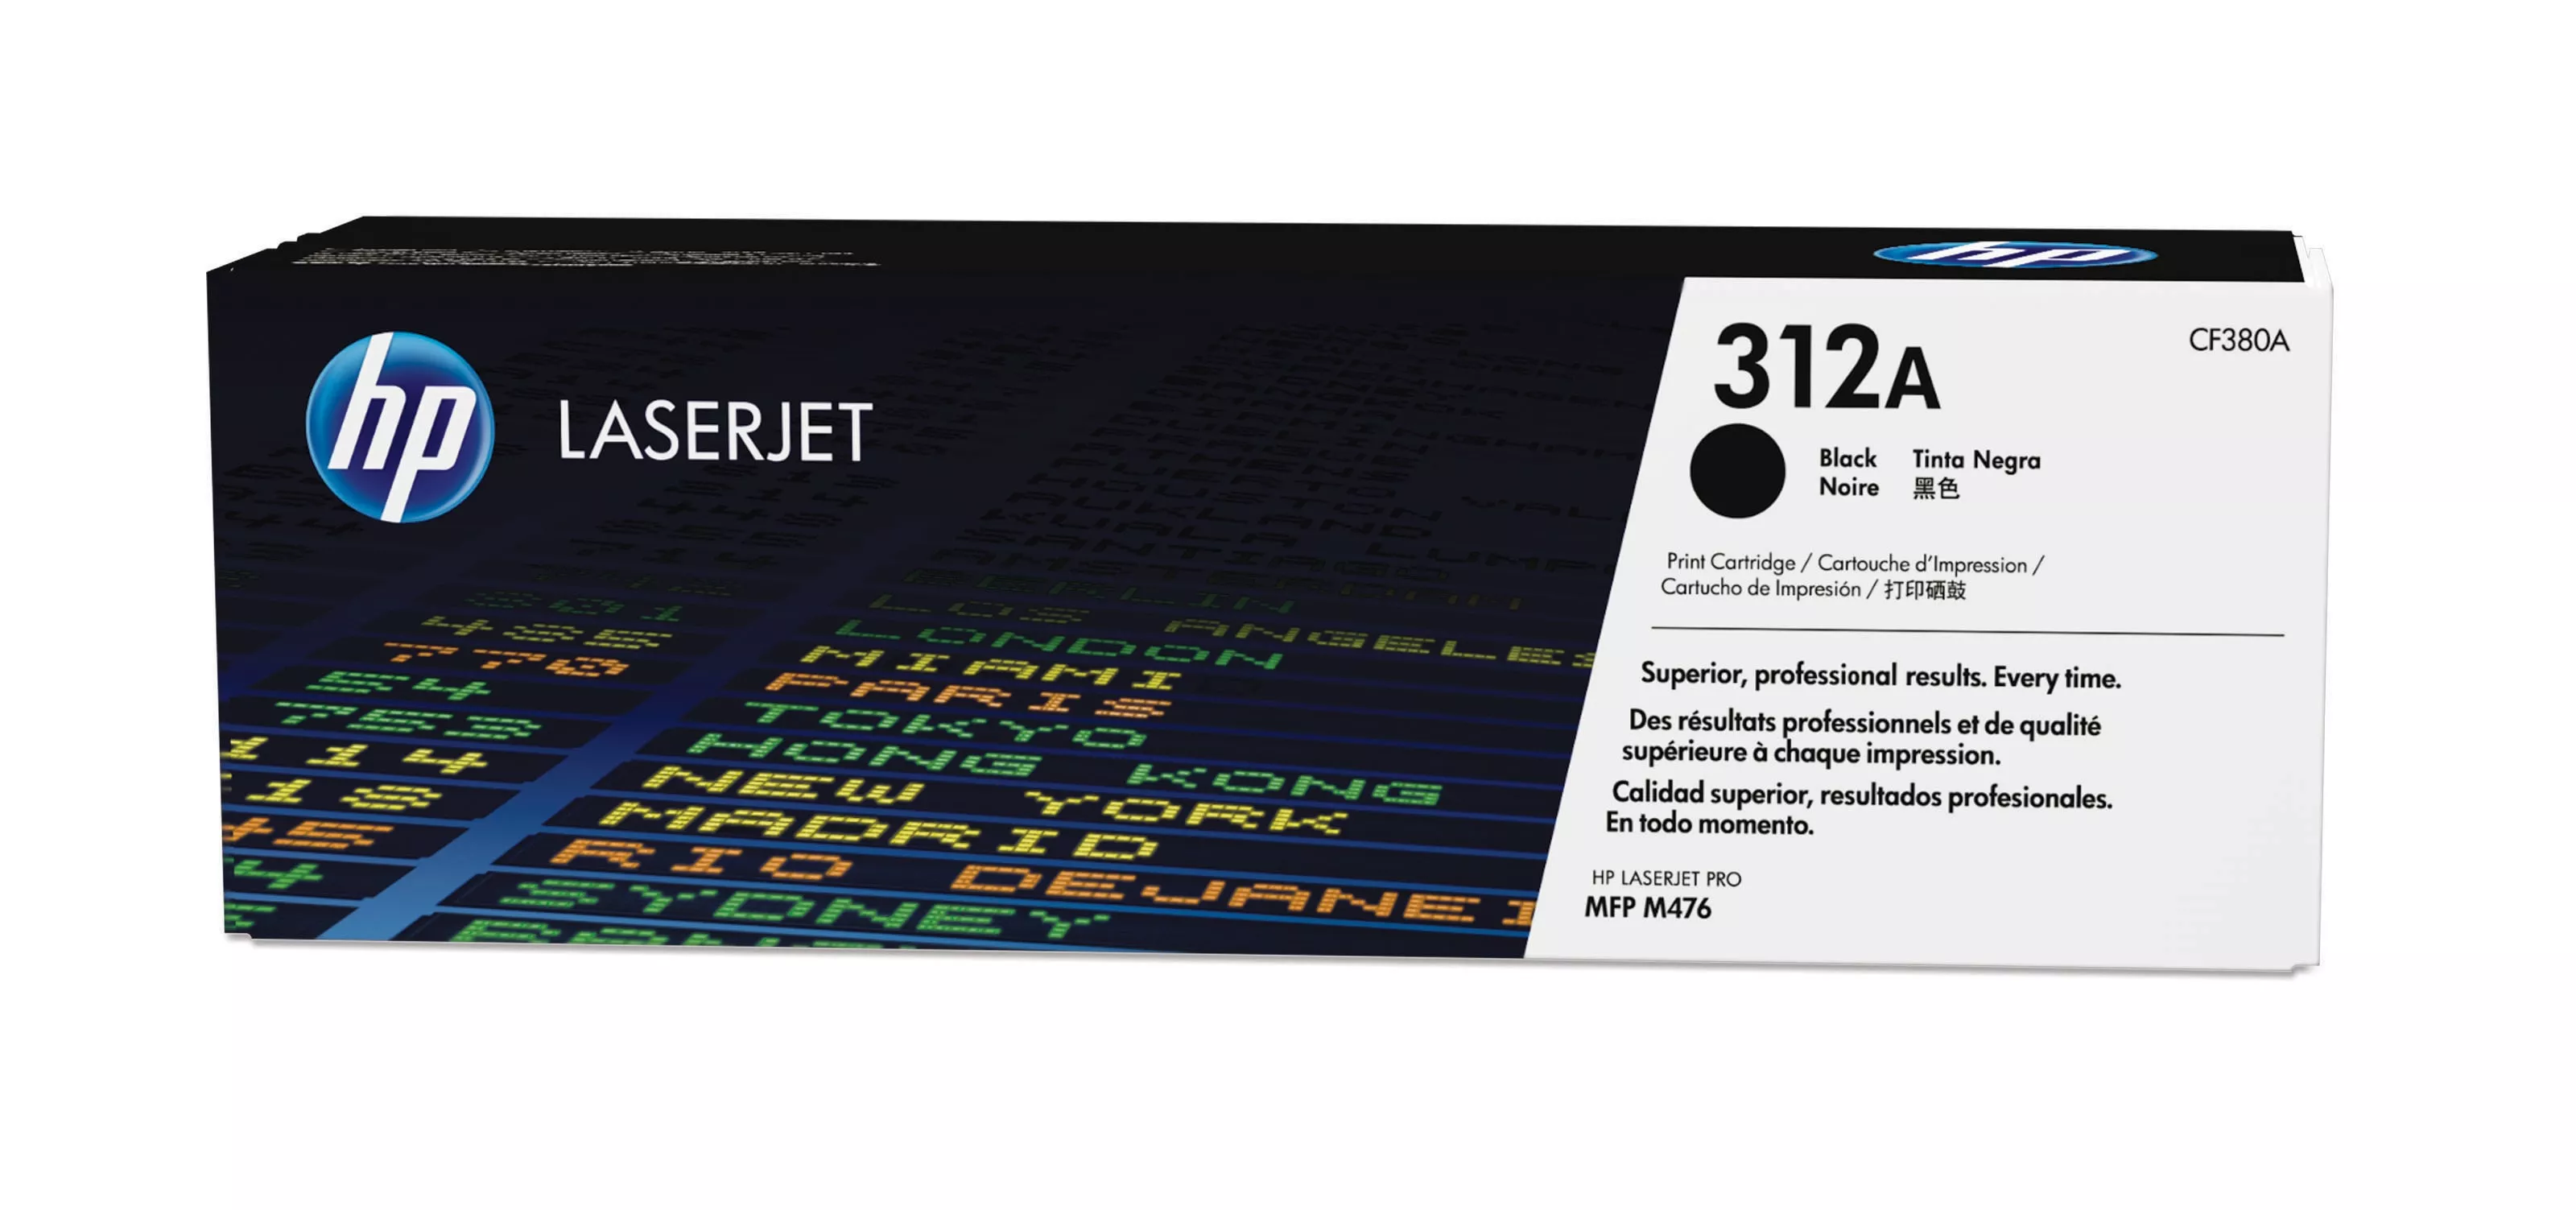 Achat HP 312A original Toner cartridge CF380A black standard au meilleur prix